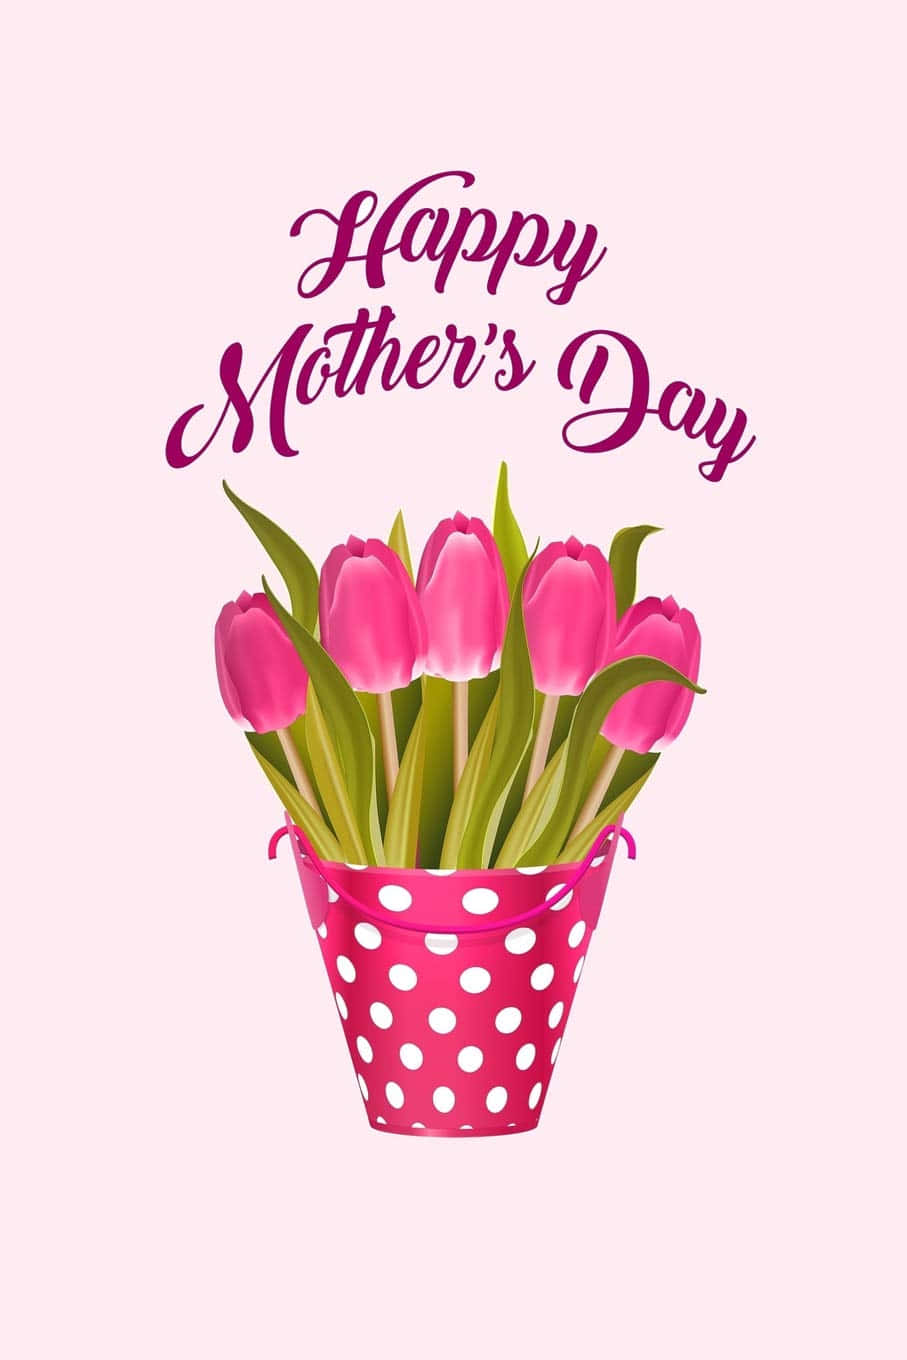 Bedankensie Sich Und Schätzen Sie Die Liebe Aller Mütter An Diesem Muttertag.